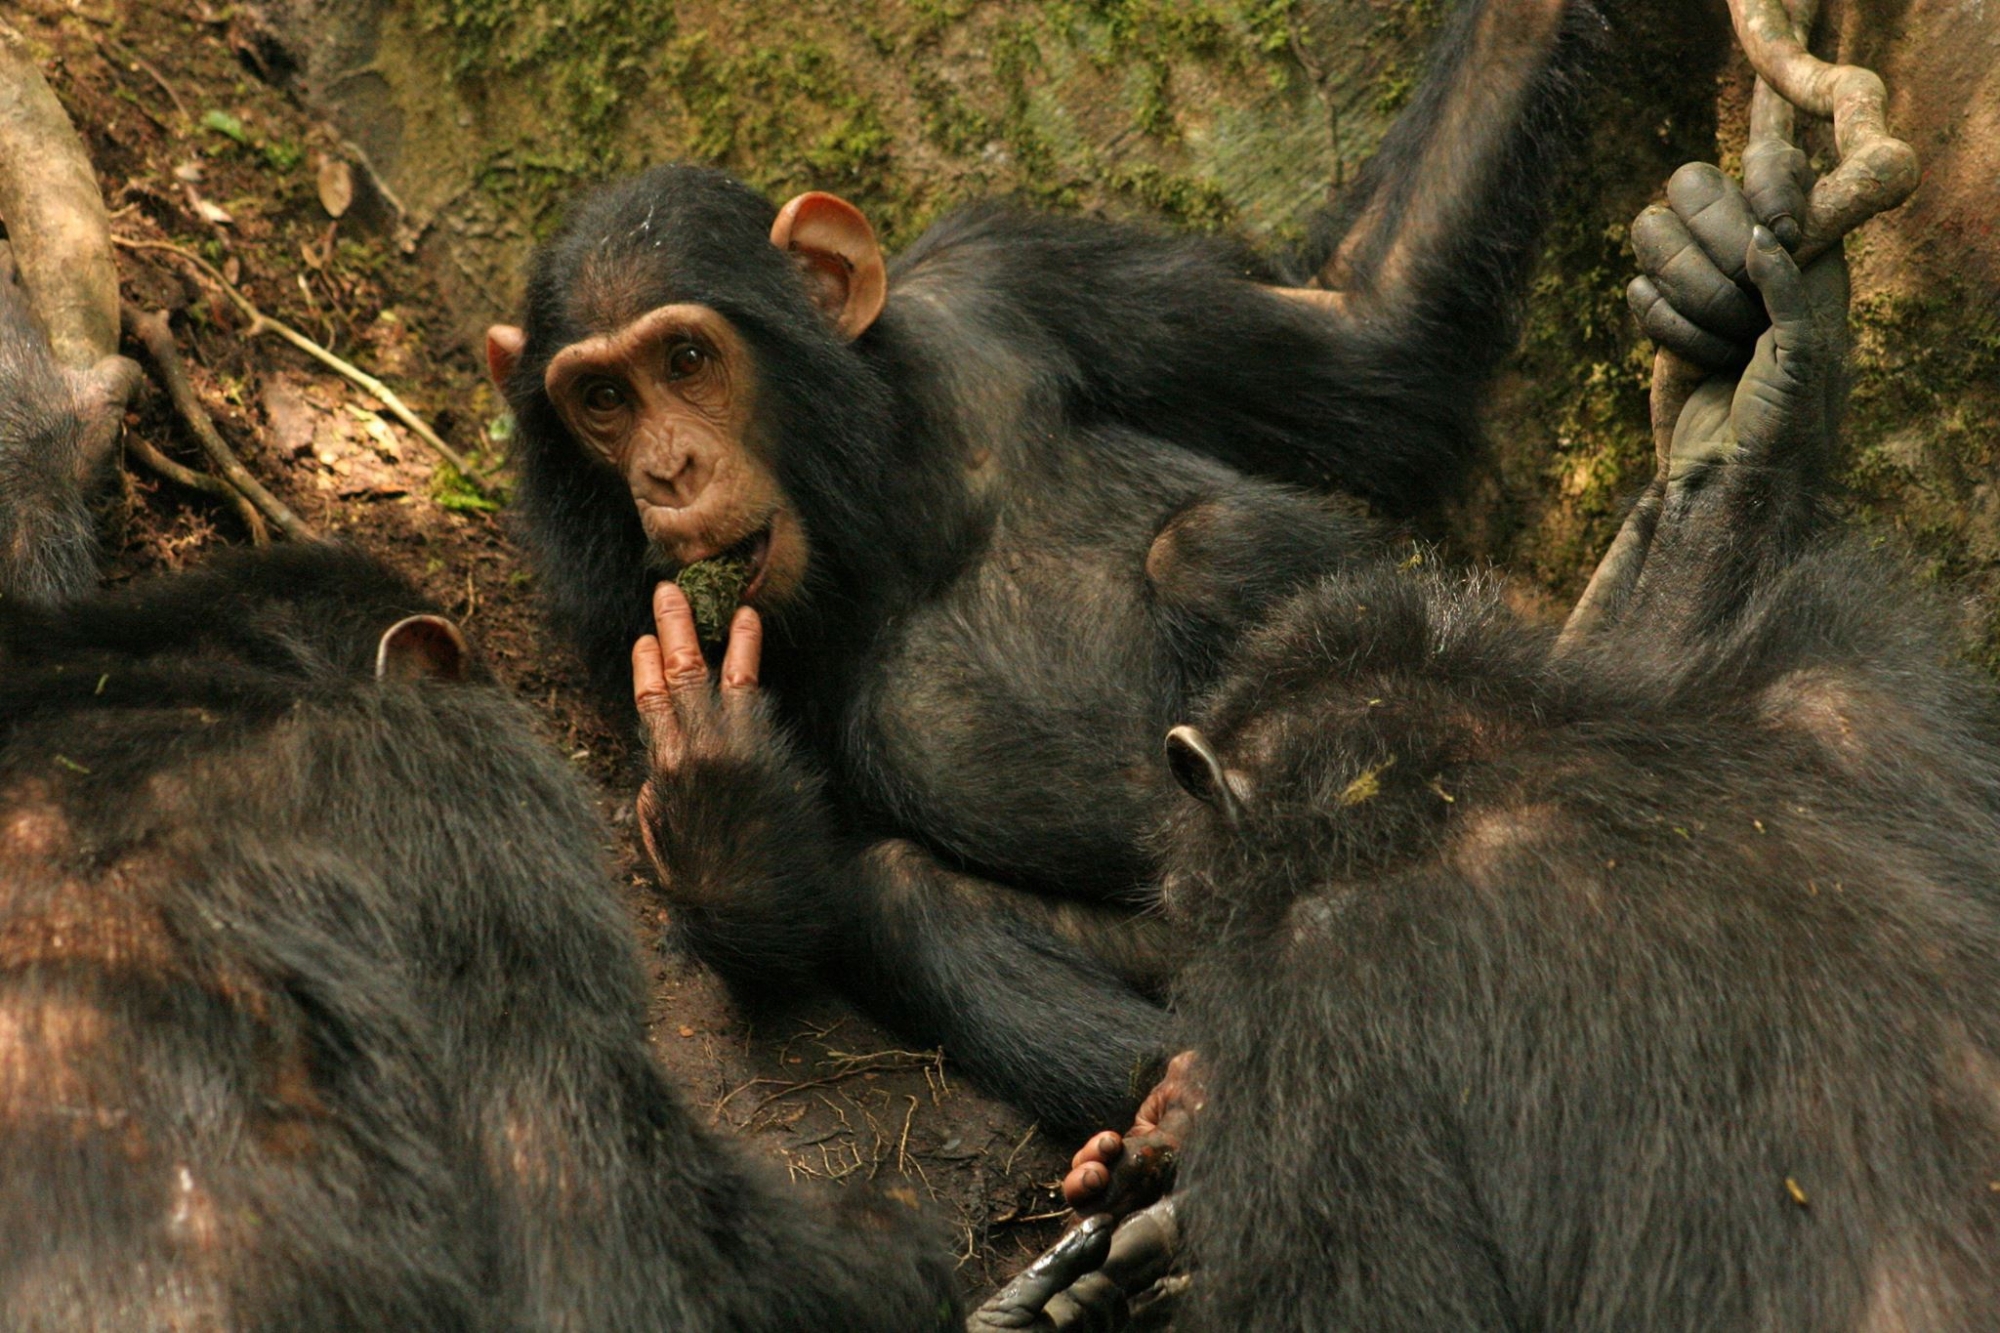 Les chimpanzés de Sonsa en Ouganda ont amélioré leur technique pour boire de l'eau.